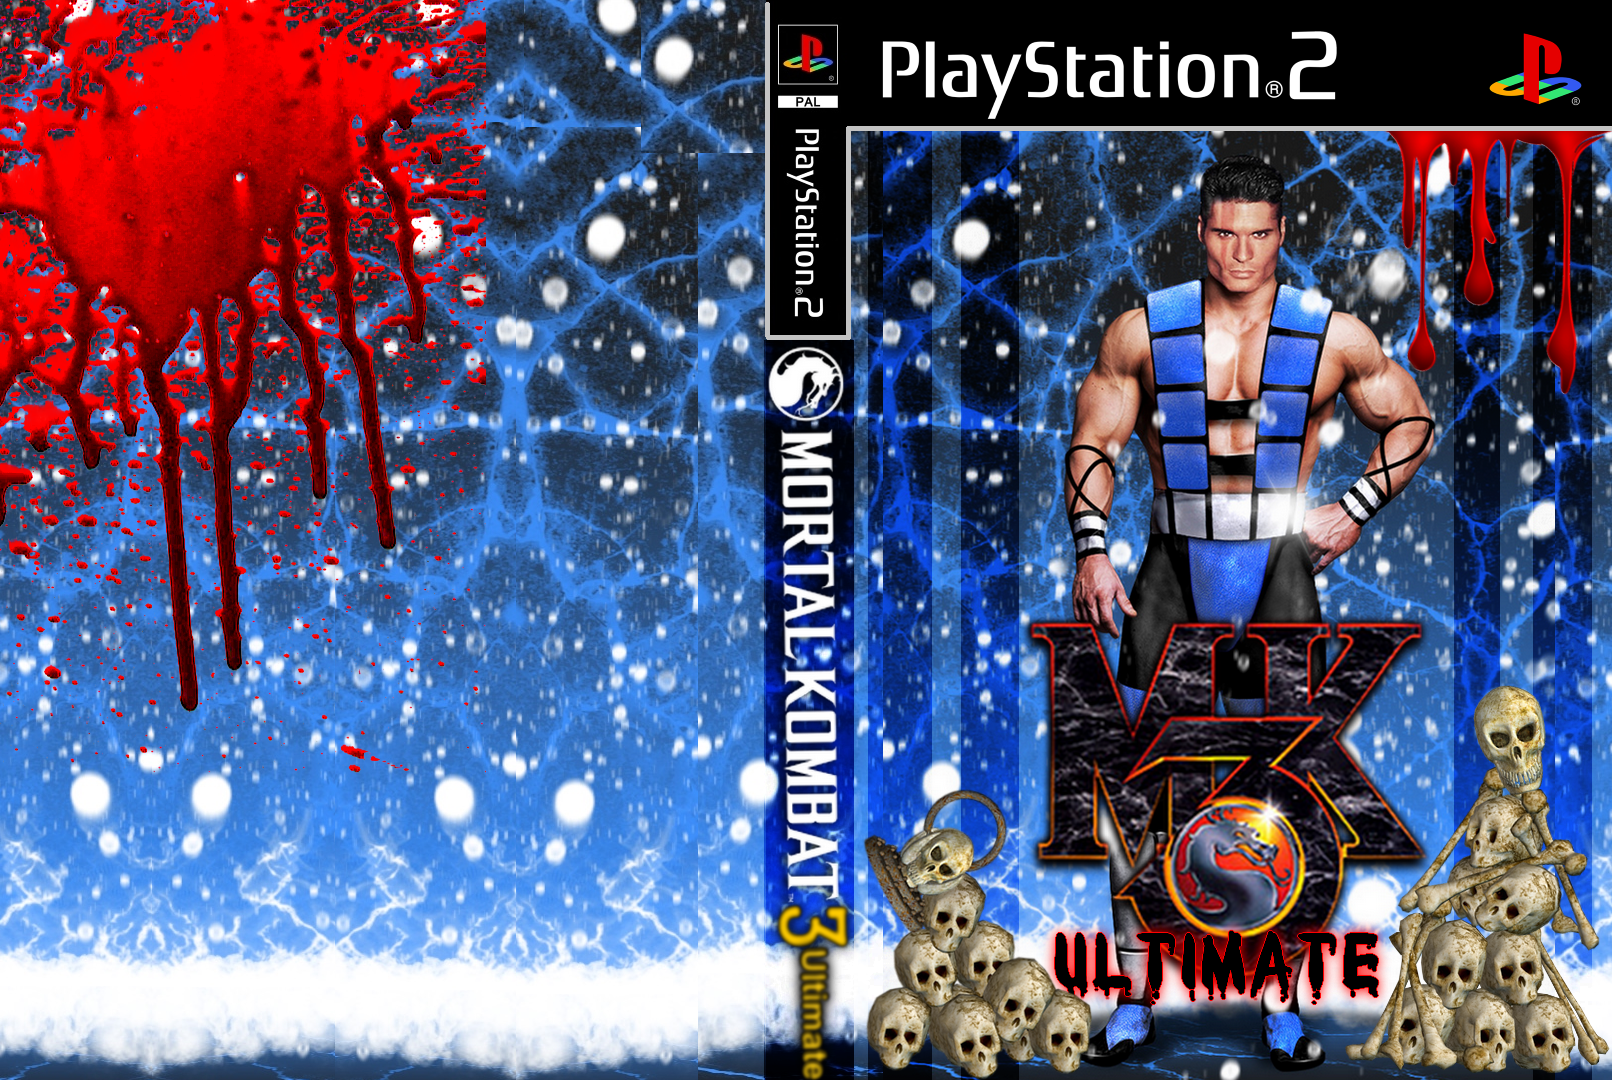 Mortal Kombat 3 Ultimate box cover